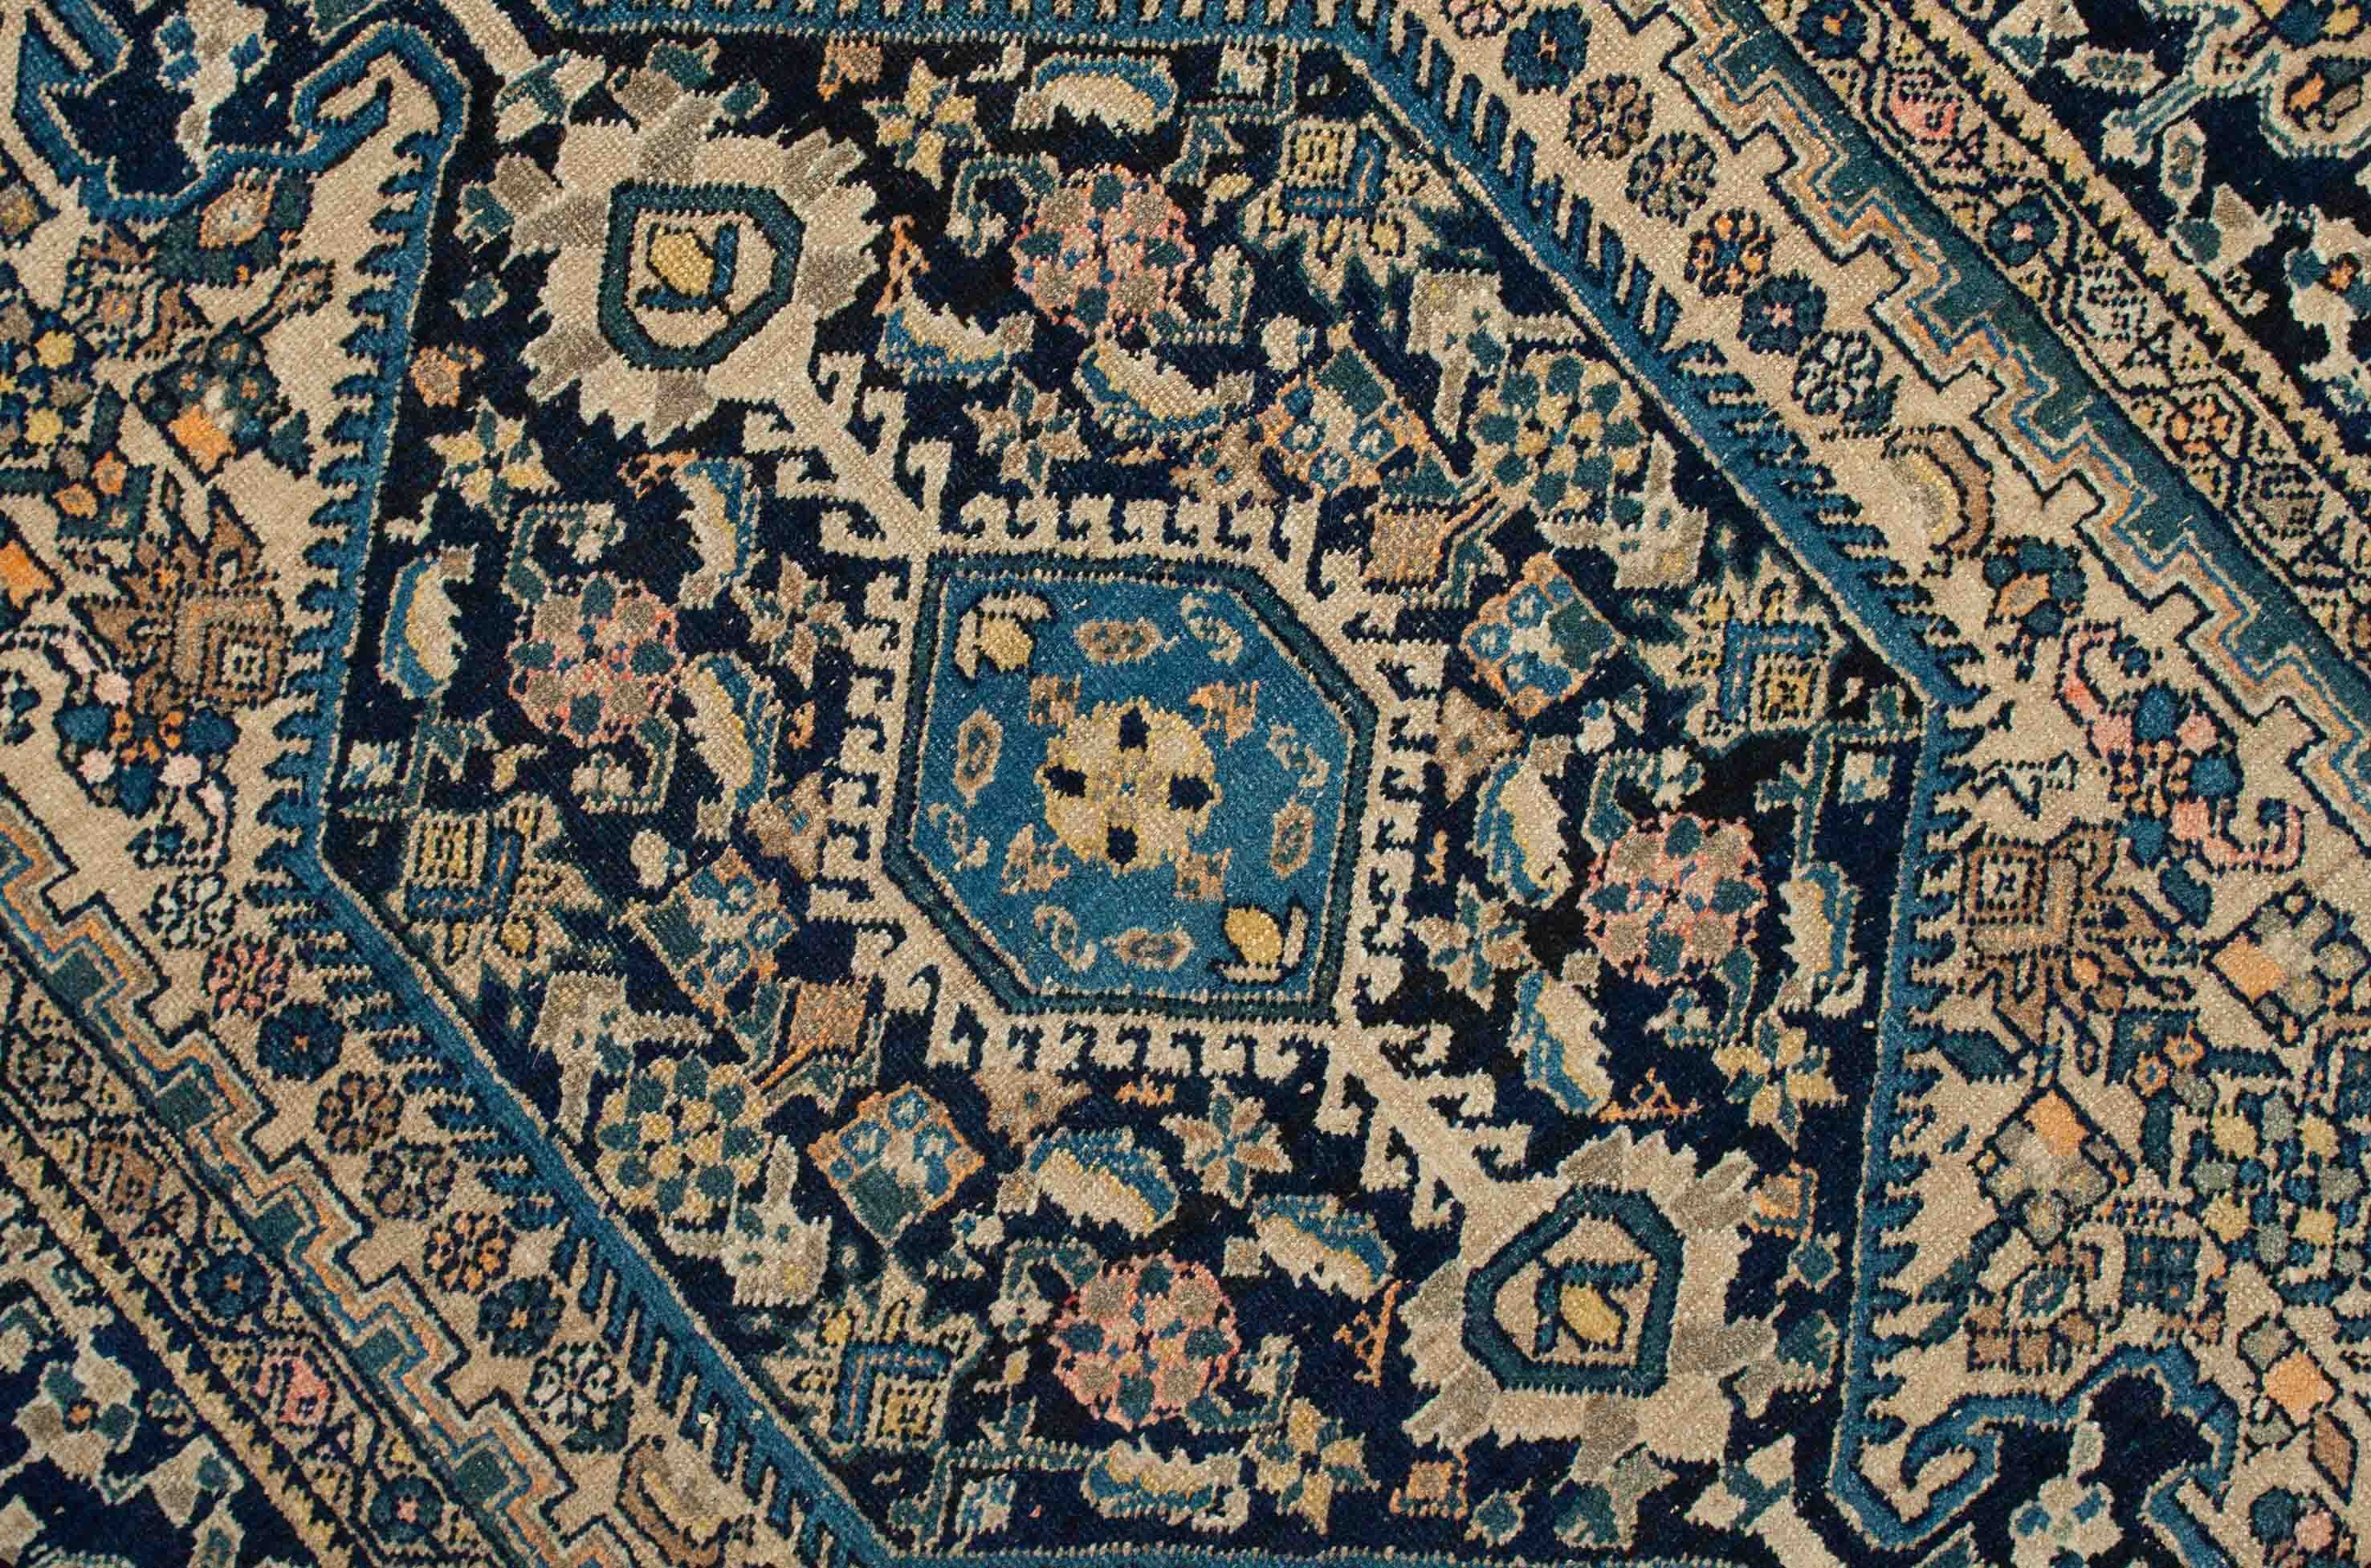 Eine Fotoaufnahme eines Bidgene Teppichs.